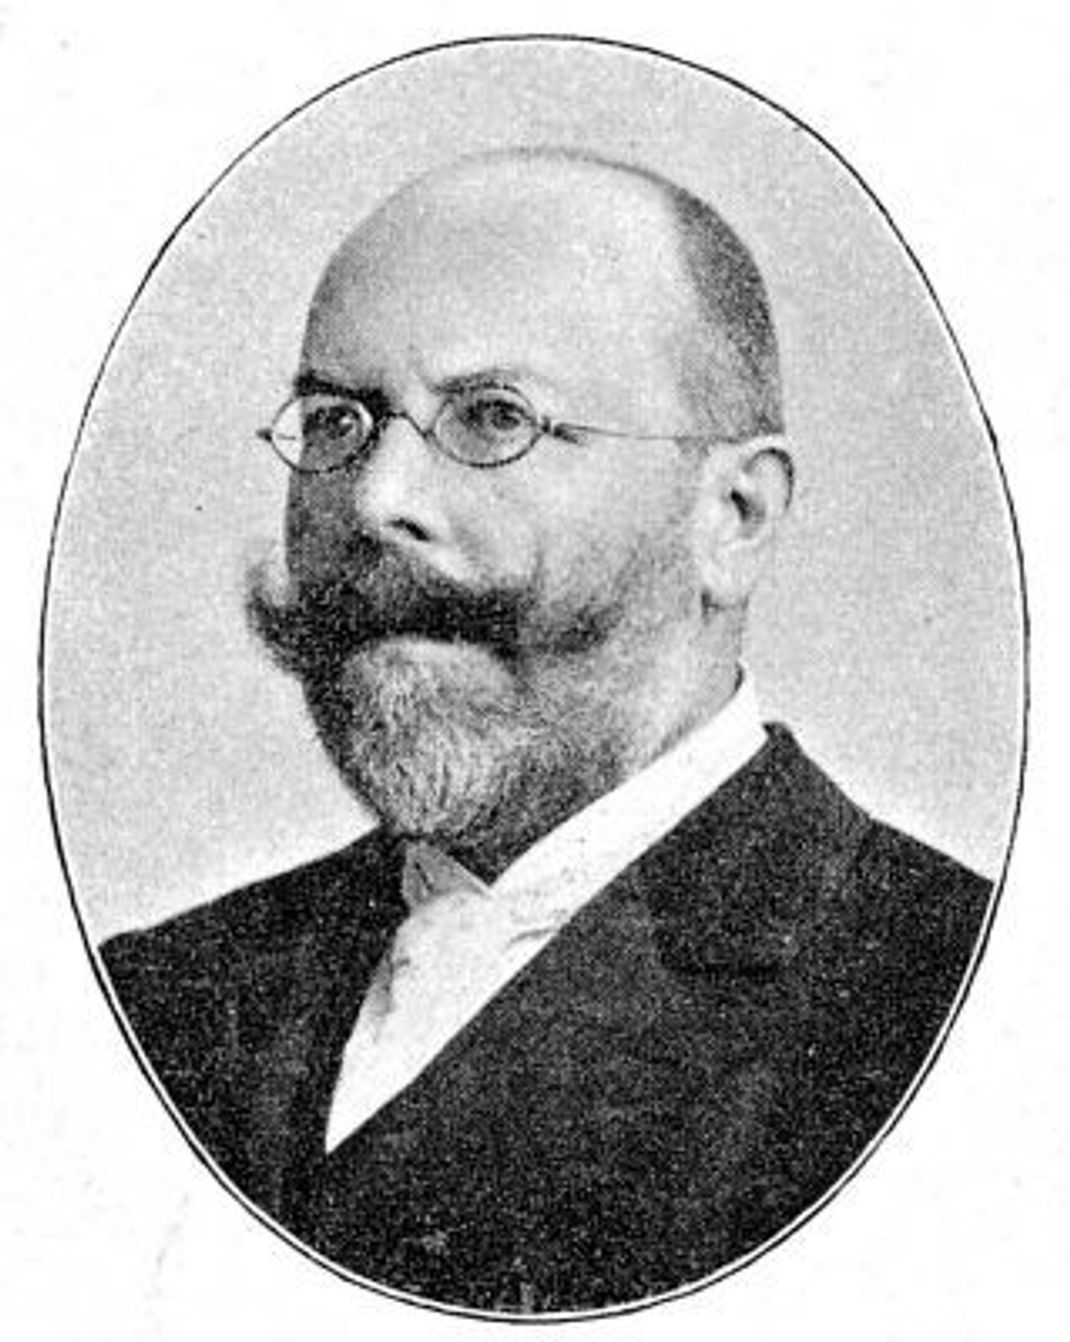 Das zeitgenössische Porträt zeigt den deutschen Mediziner, Infektionsforscher, Bakteriologen und Hygieniker Friedrich August Johannes Loeffler (1852-1915).